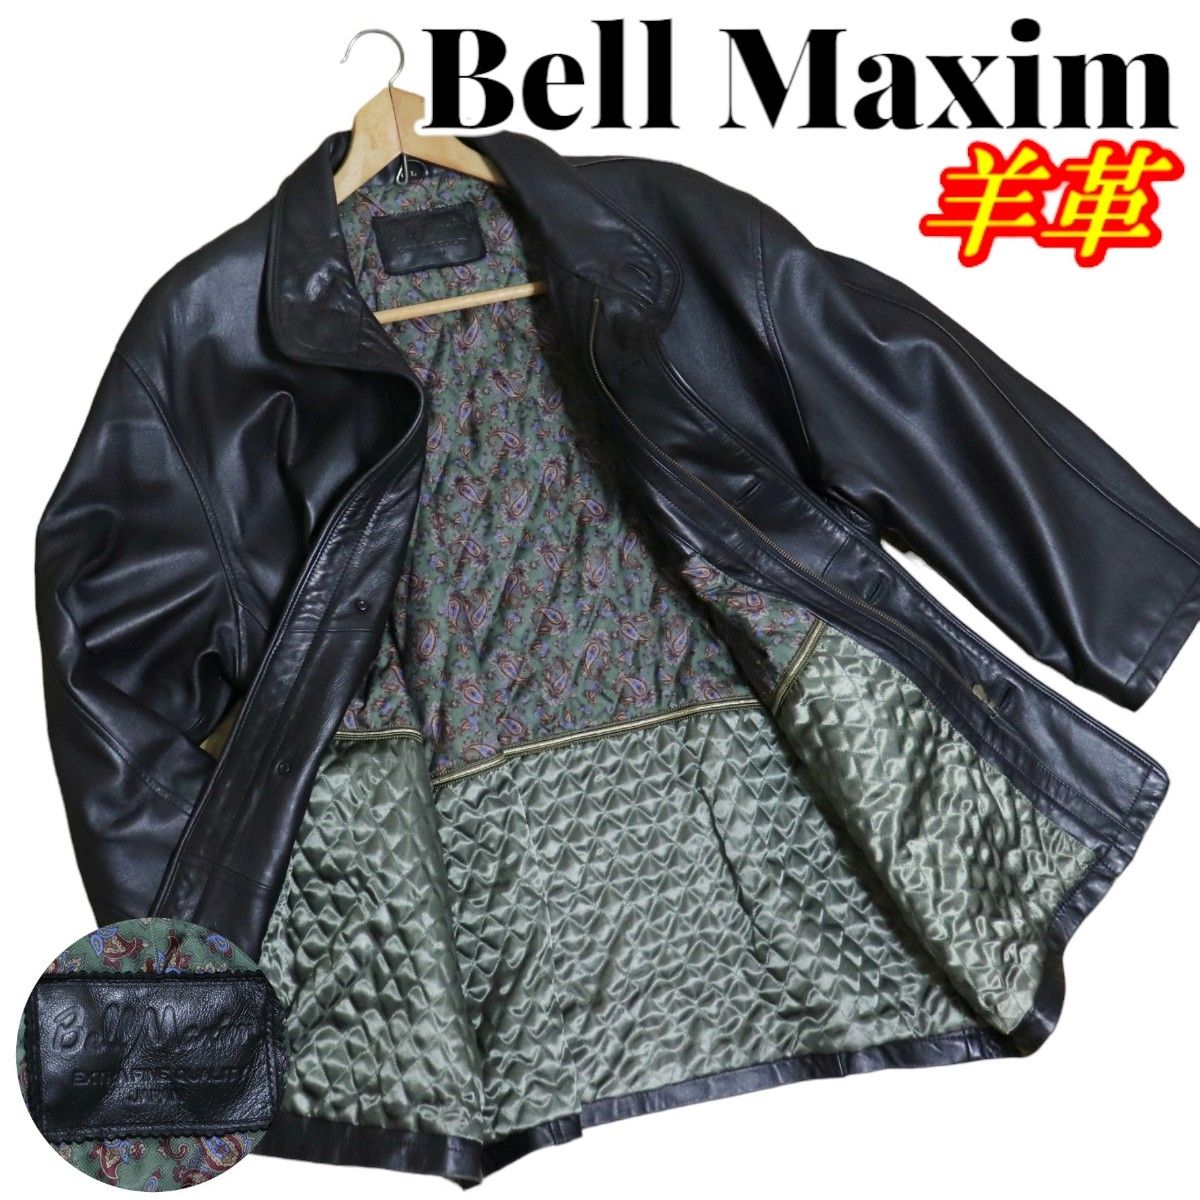 Bell Maxim ベルマキシム 羊革 裏地ペイズリー柄 レザージャケット レザーコート Lサイズ ブラック